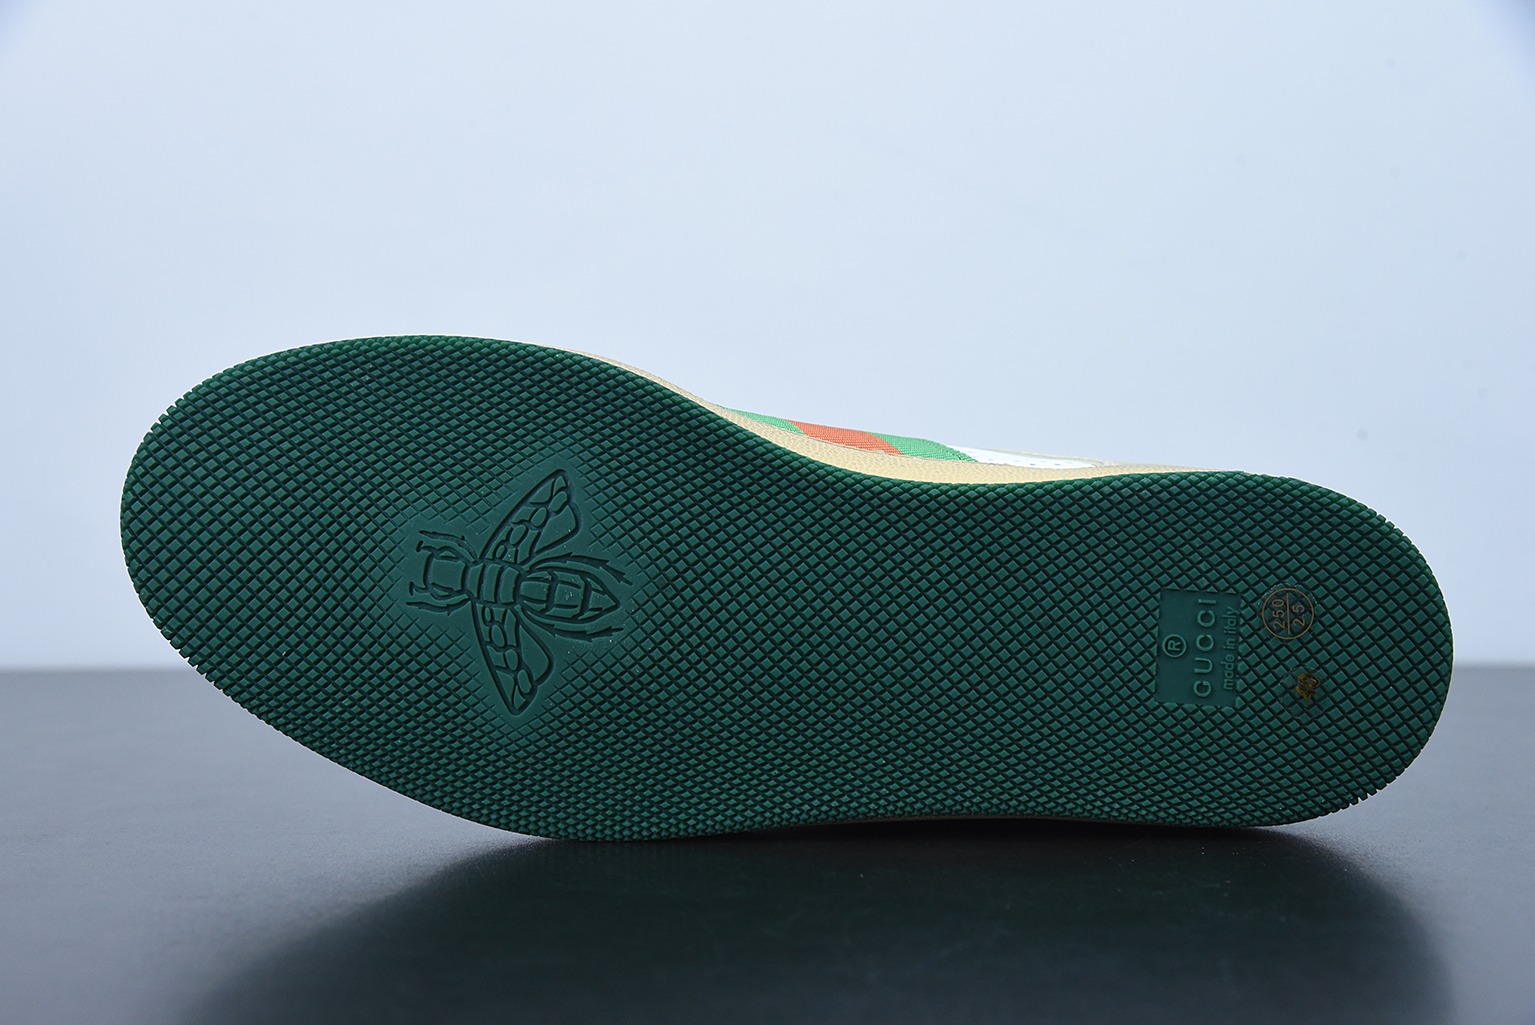 Gucci古驰小脏鞋系列 纯原绿盒 Distressed Screener sneaker 经典原型复古百搭做旧小脏板鞋